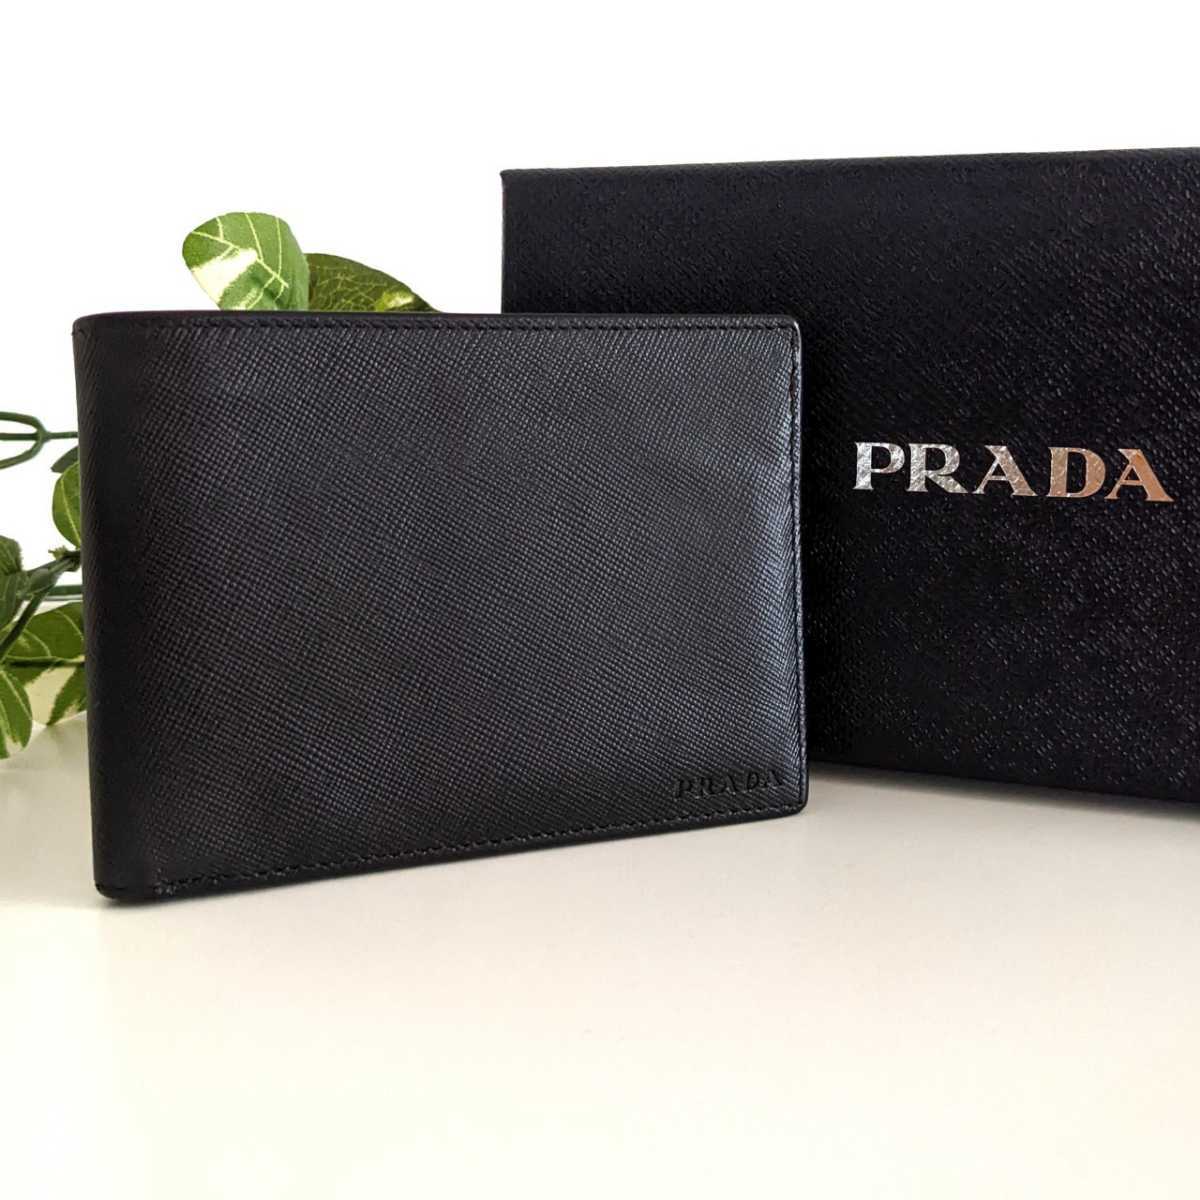 良品 PRADA プラダ サフィアーノ レザー 二つ折り財布 ヴィンテージ ウォレット イタリア製 シンプル ブラック 黒 レディース メンズ